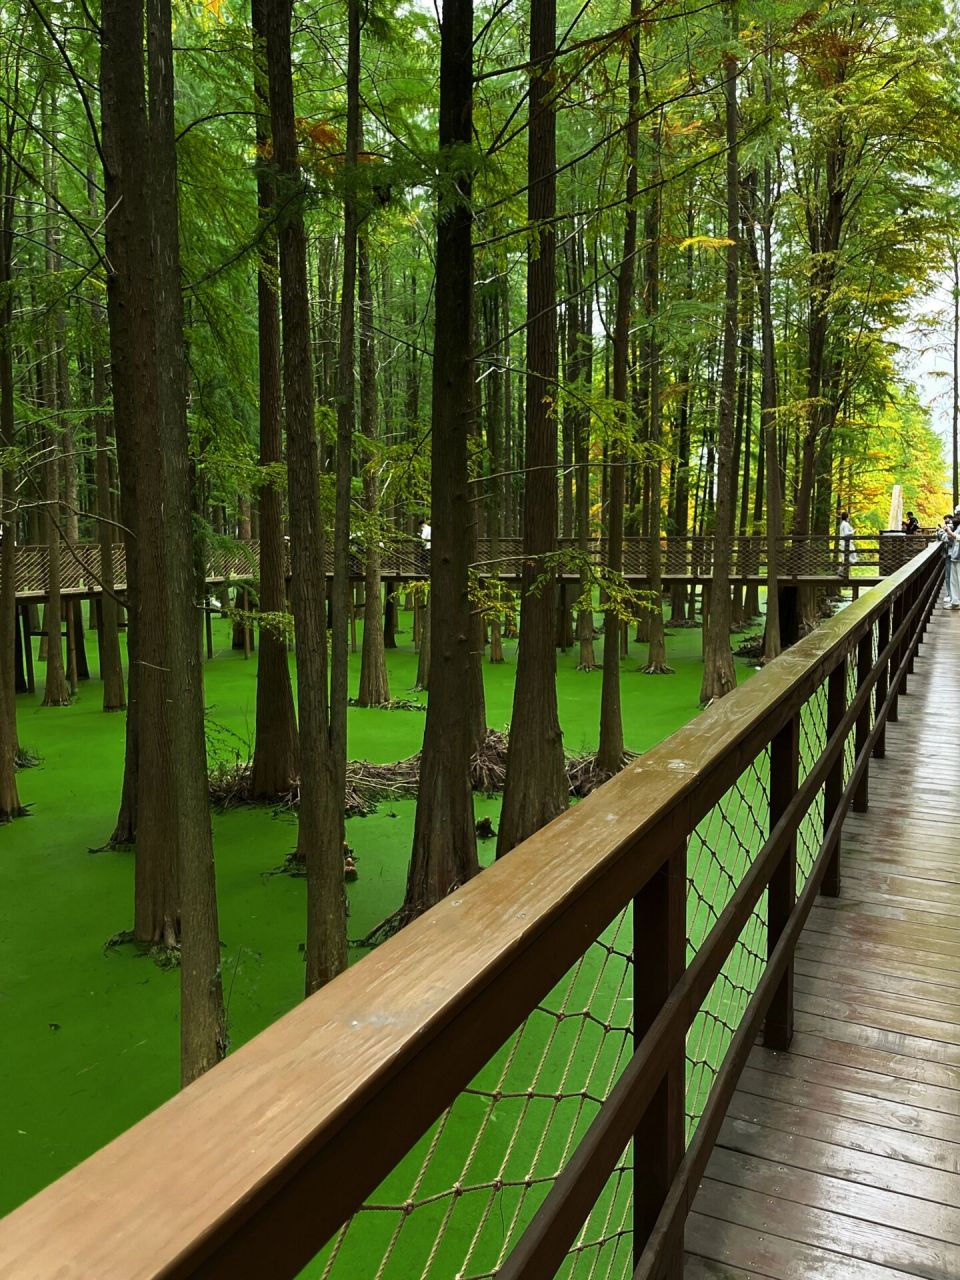 青山湖水上森林公园 青山湖水上森林公园,真的是仙境吧,称为抹茶森林